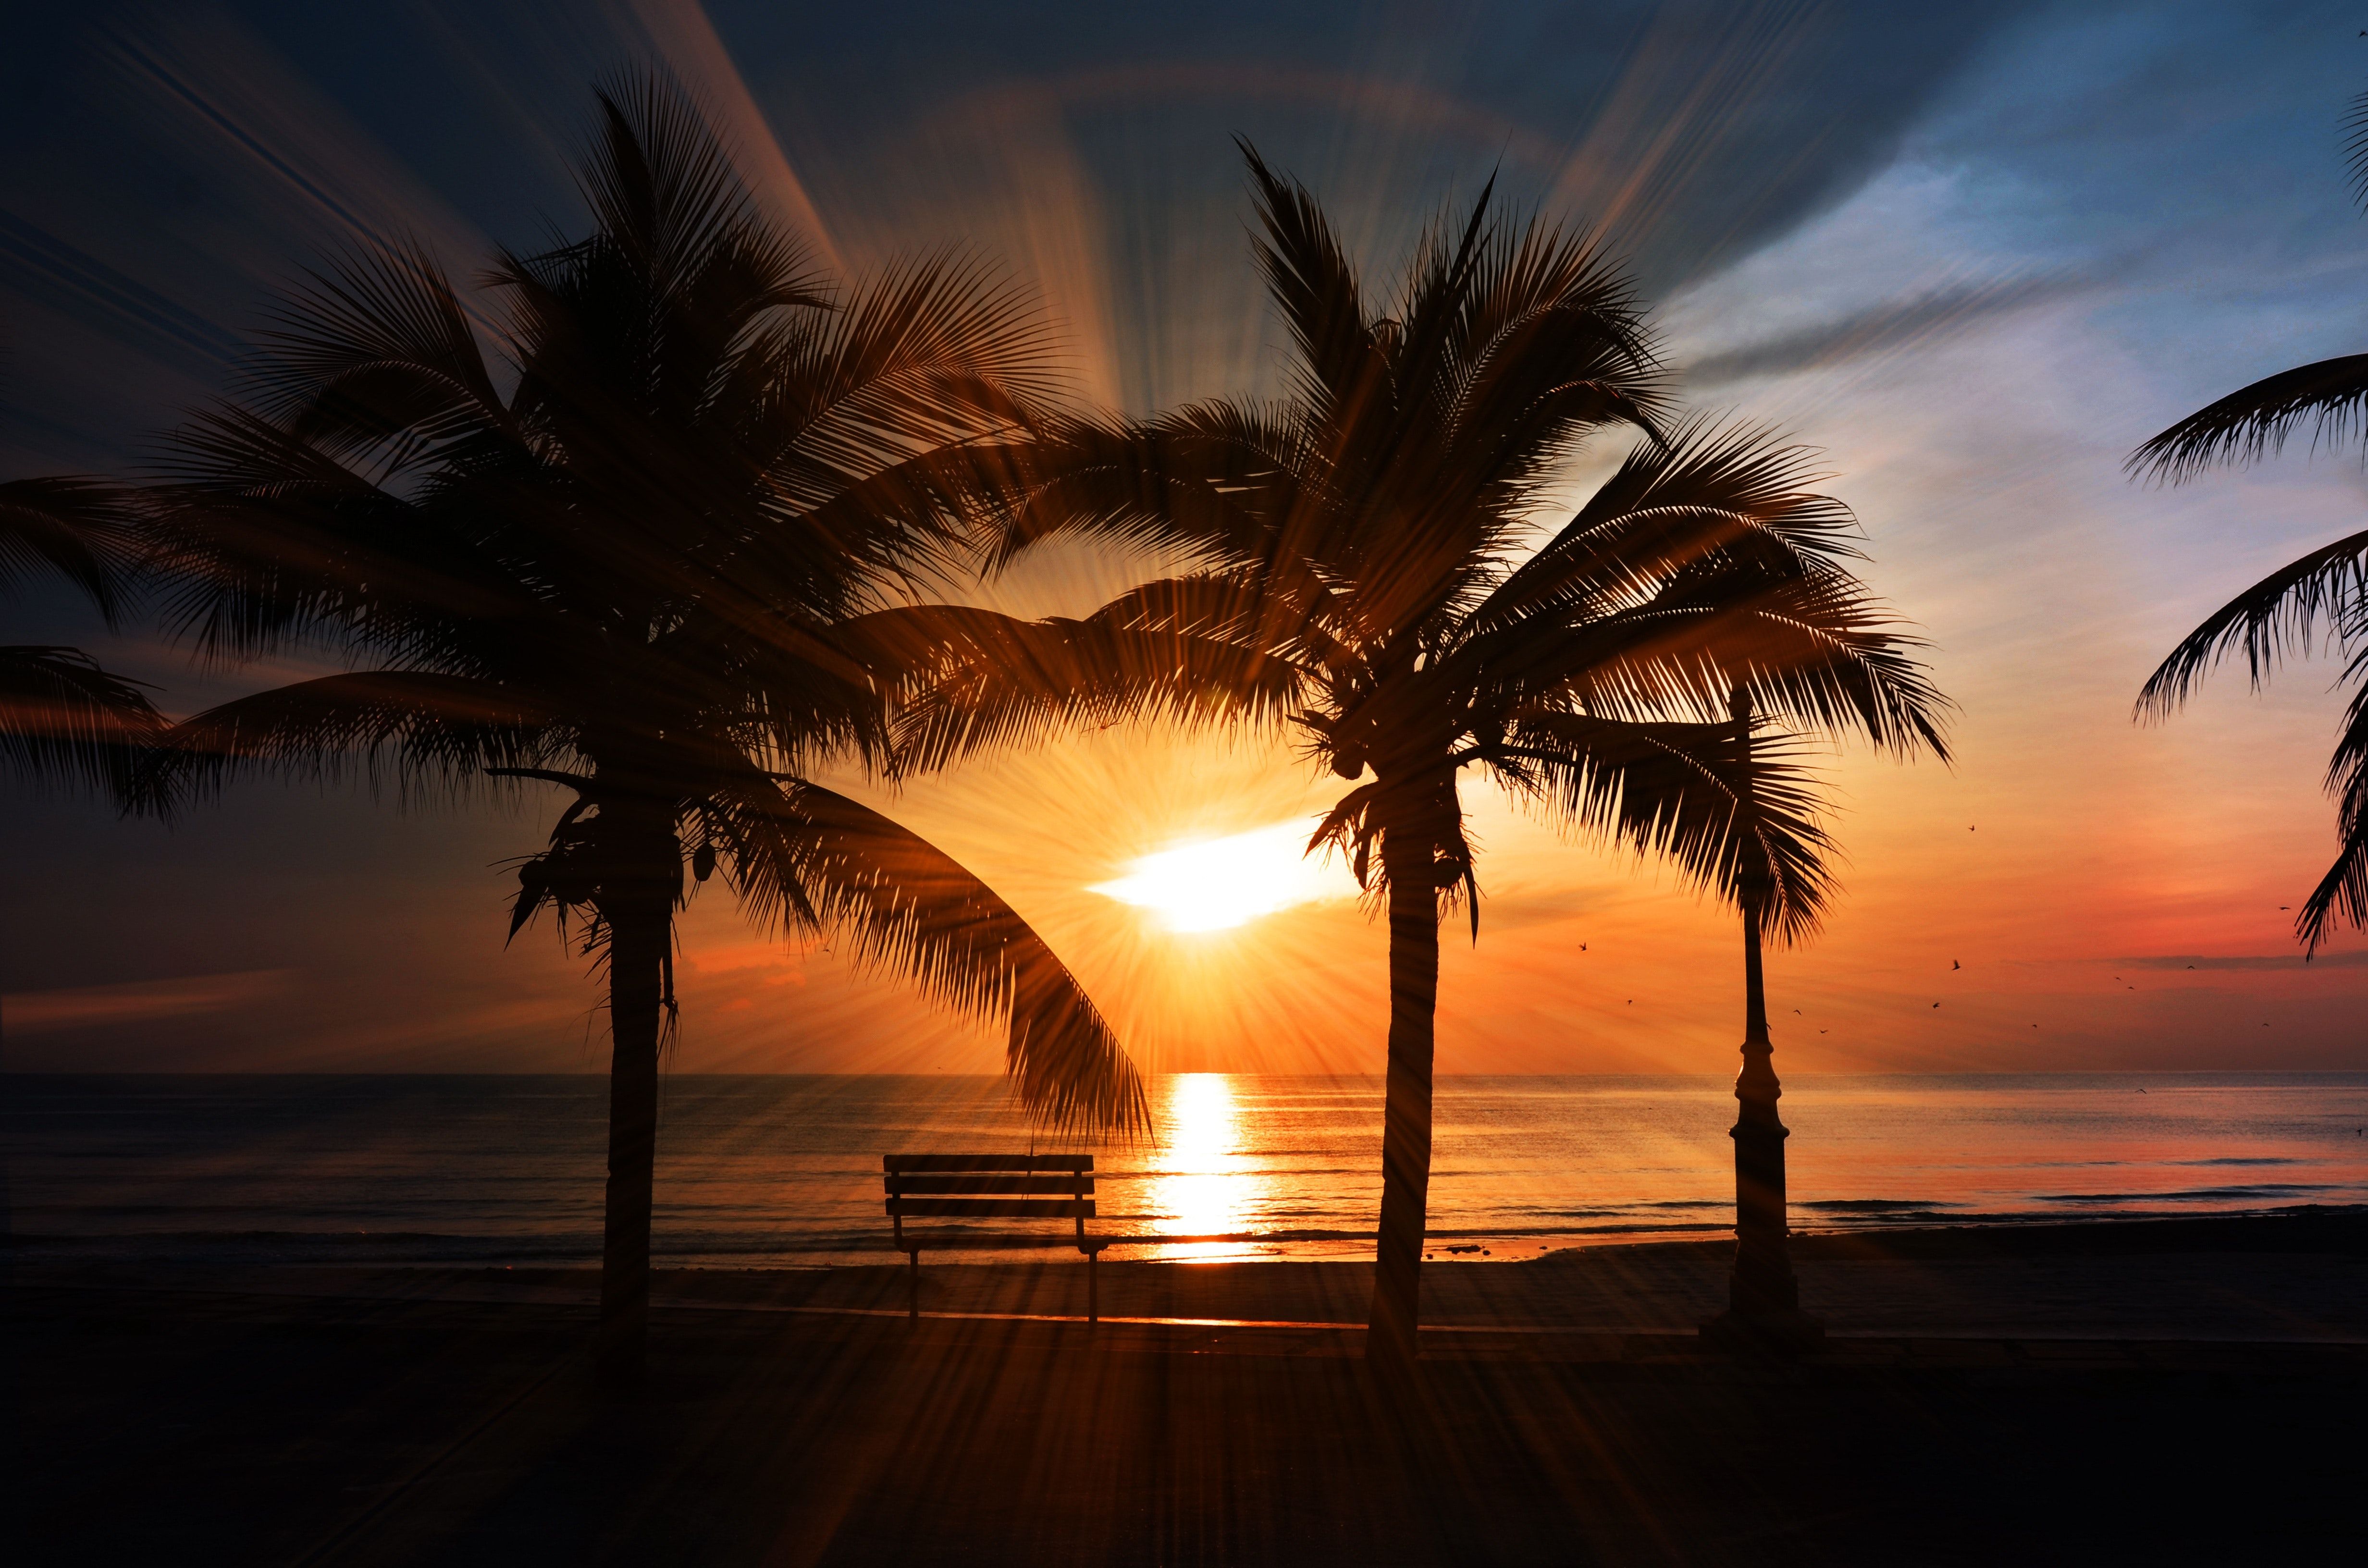  Sonnenuntergang Hintergrundbild 4928x3264. 100.Sonnenuntergang Strand Bilder Und Fotos · Kostenlos Downloaden · Stock Fotos